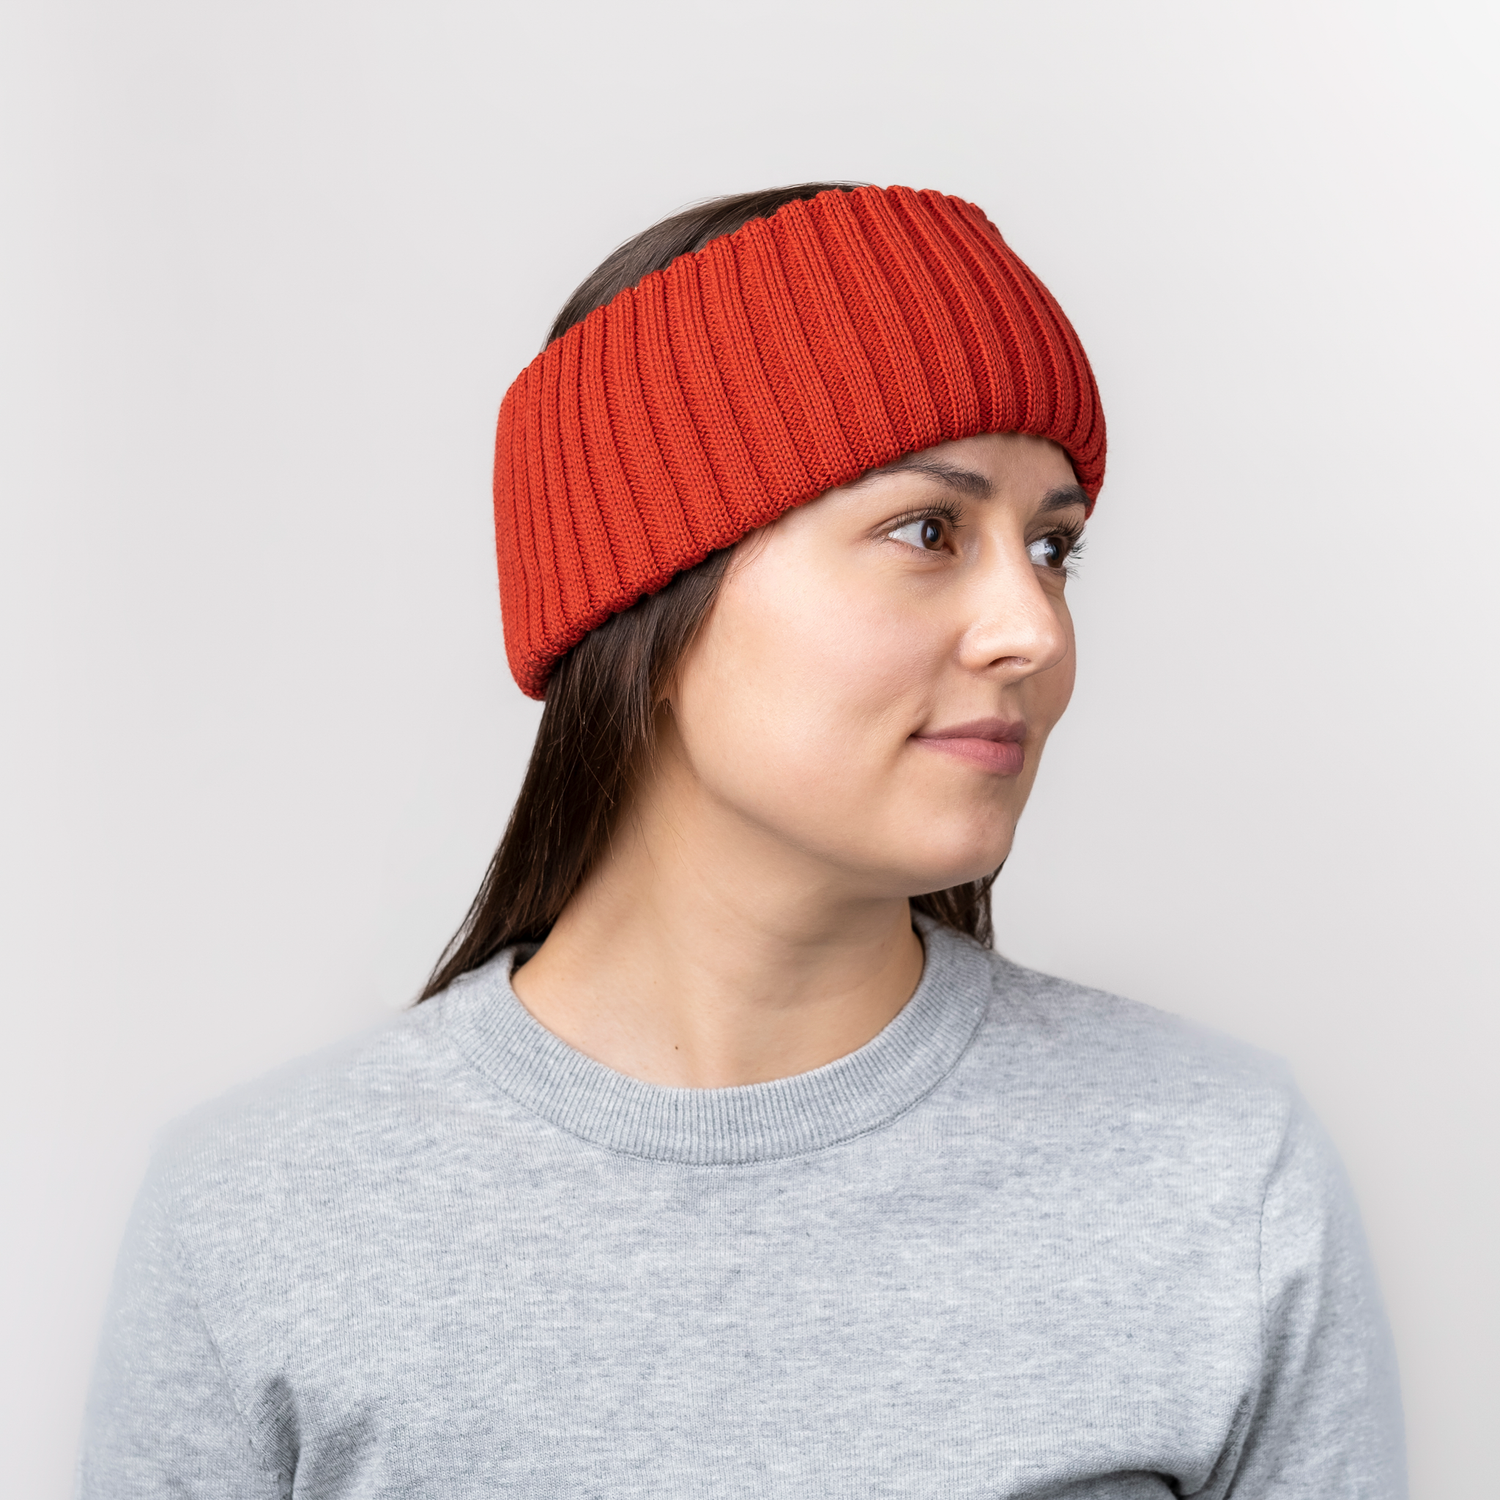 Ilakka headband, Red - Women